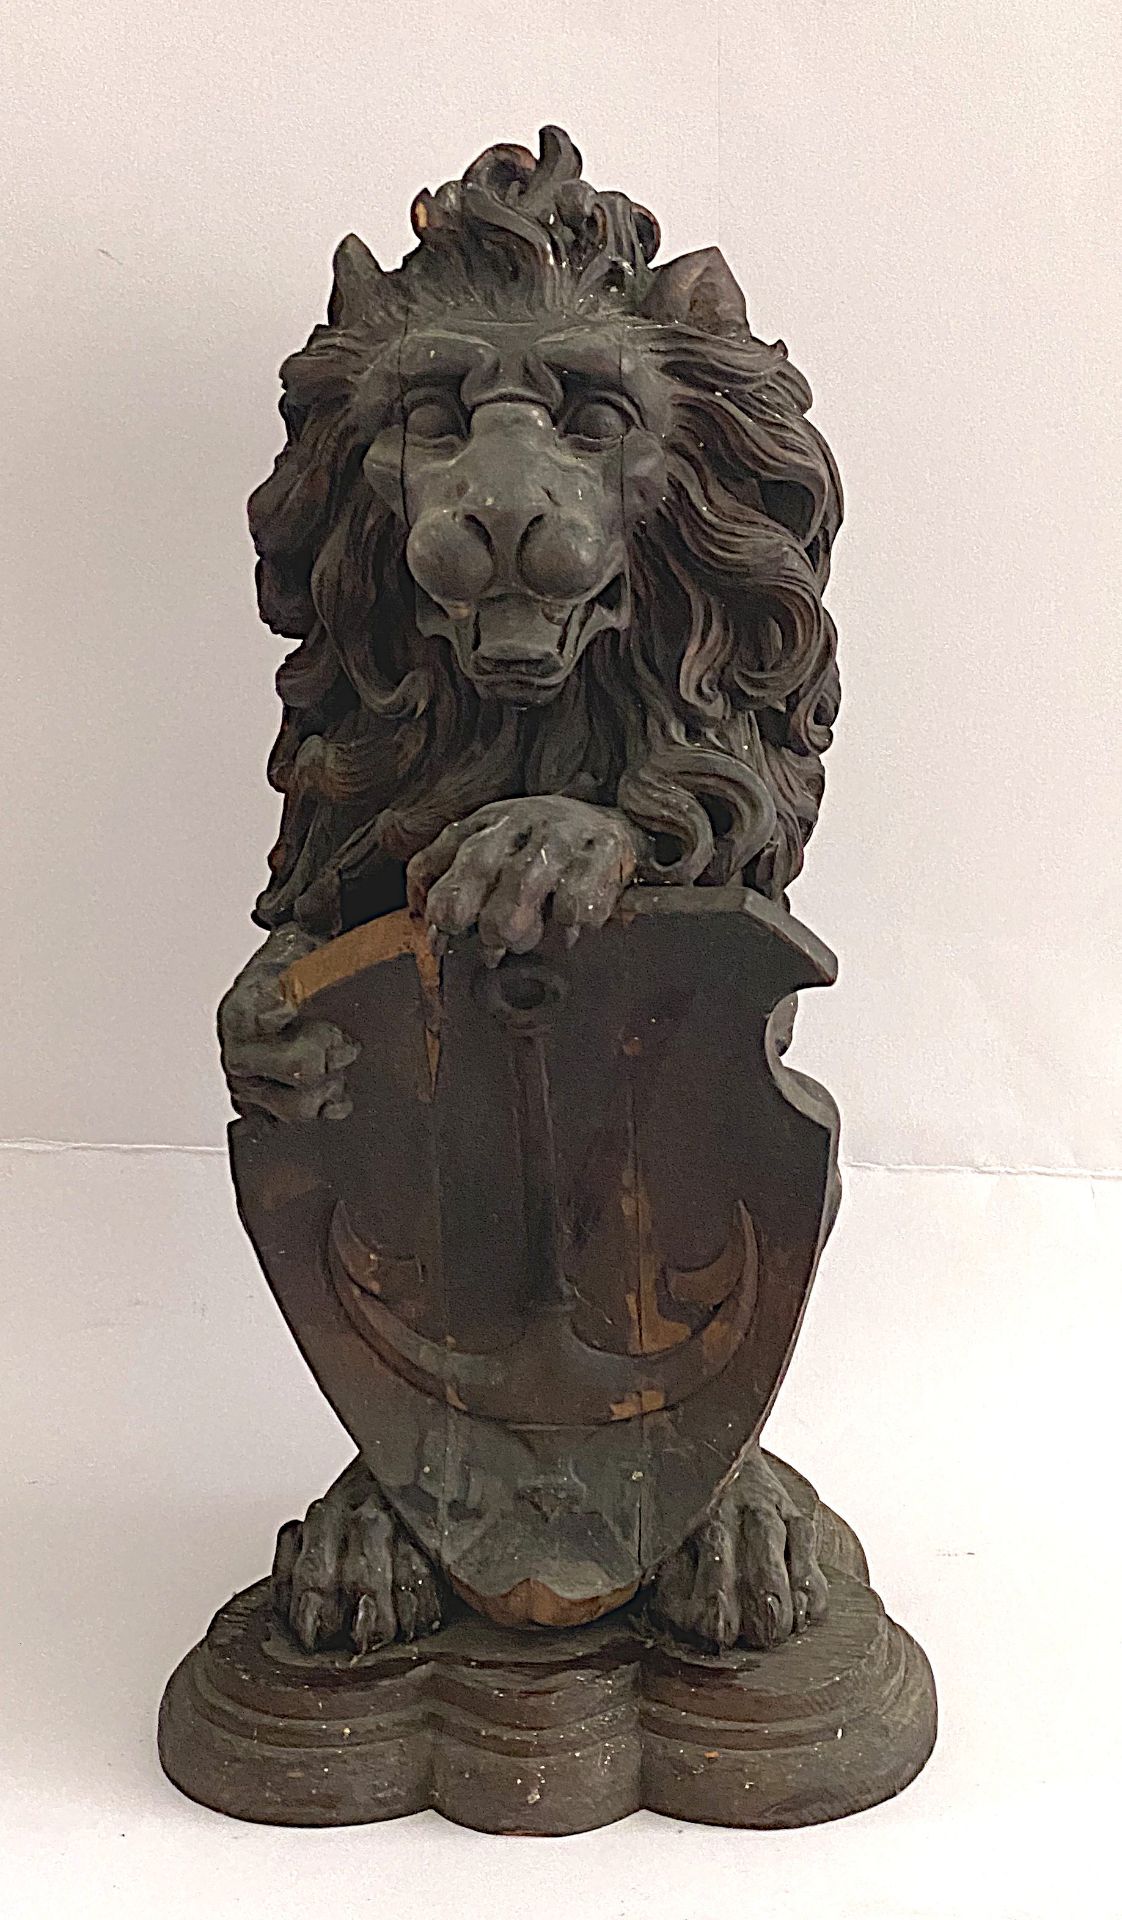 Löwen-Skulptur